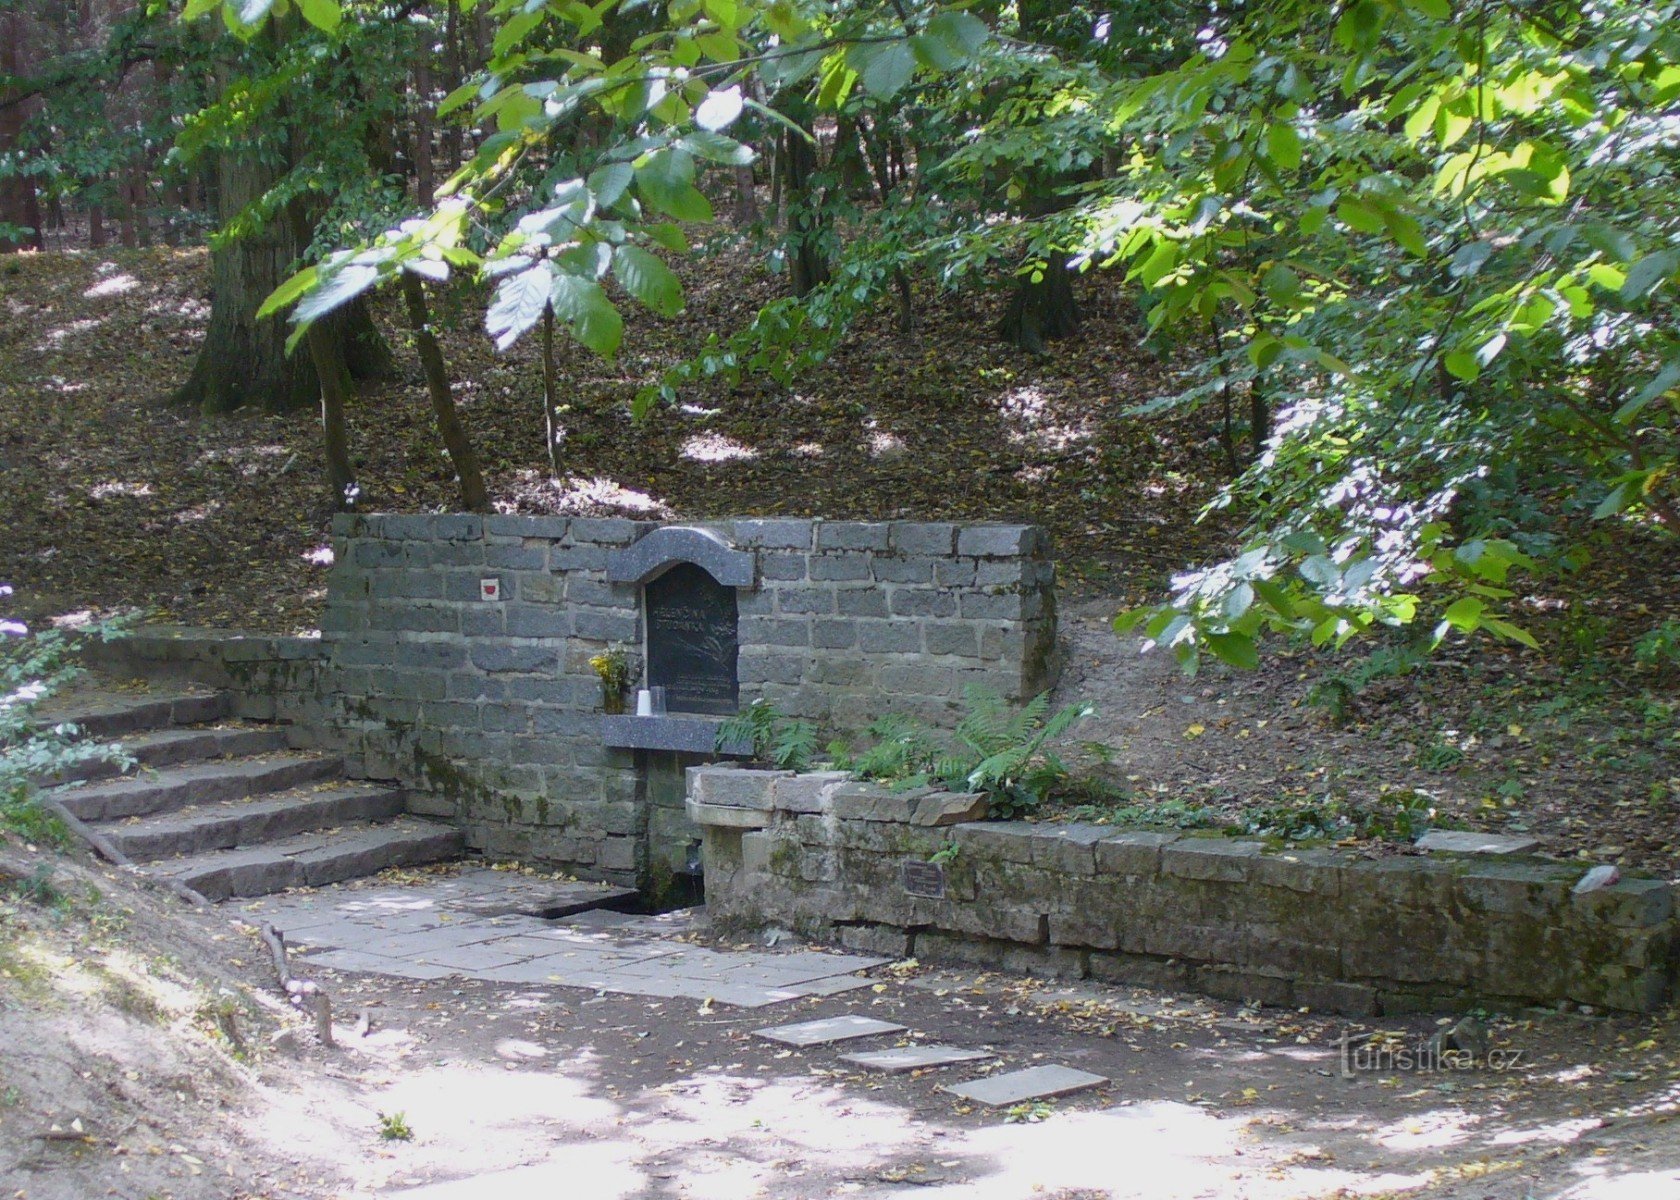 Helen's well